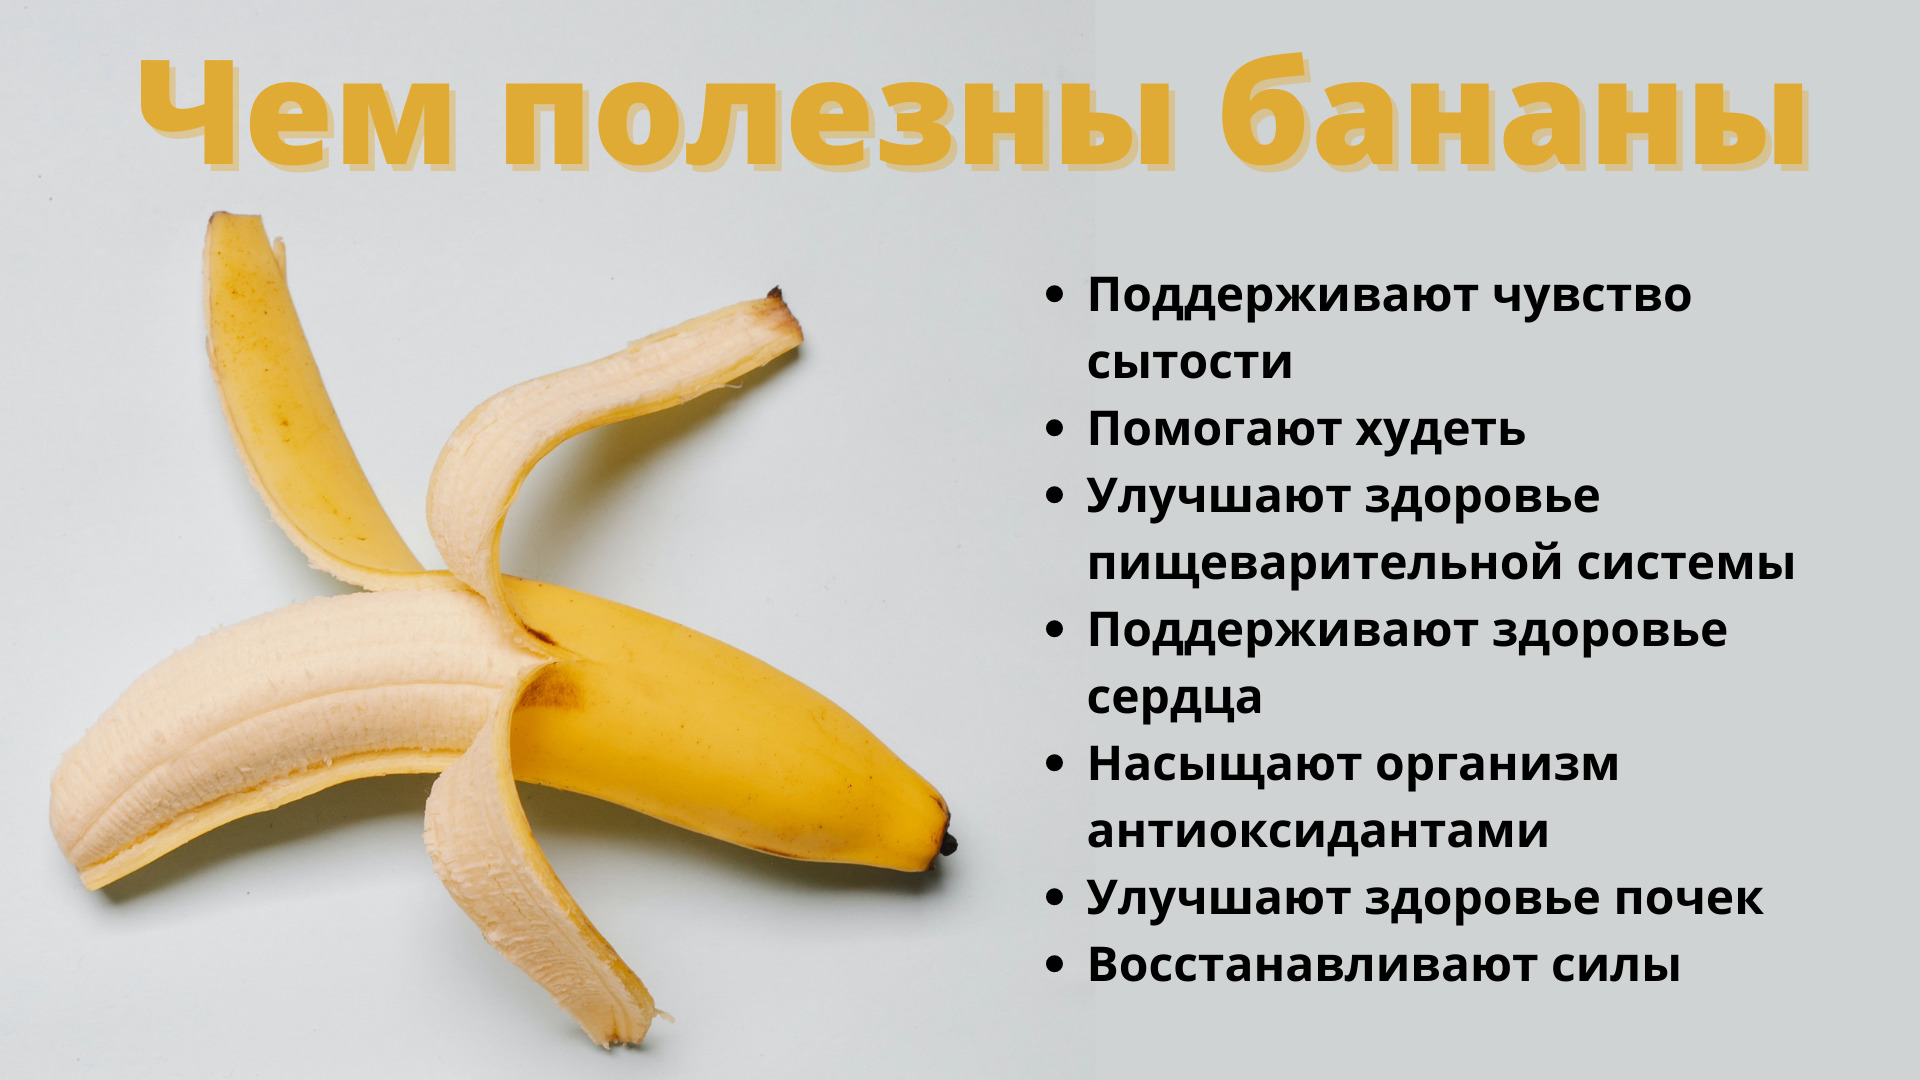 Десертный банан польза. Чем полезен банан. Чем полезен банан для организма. Полезные свойства банана. Банан для чего полезно.